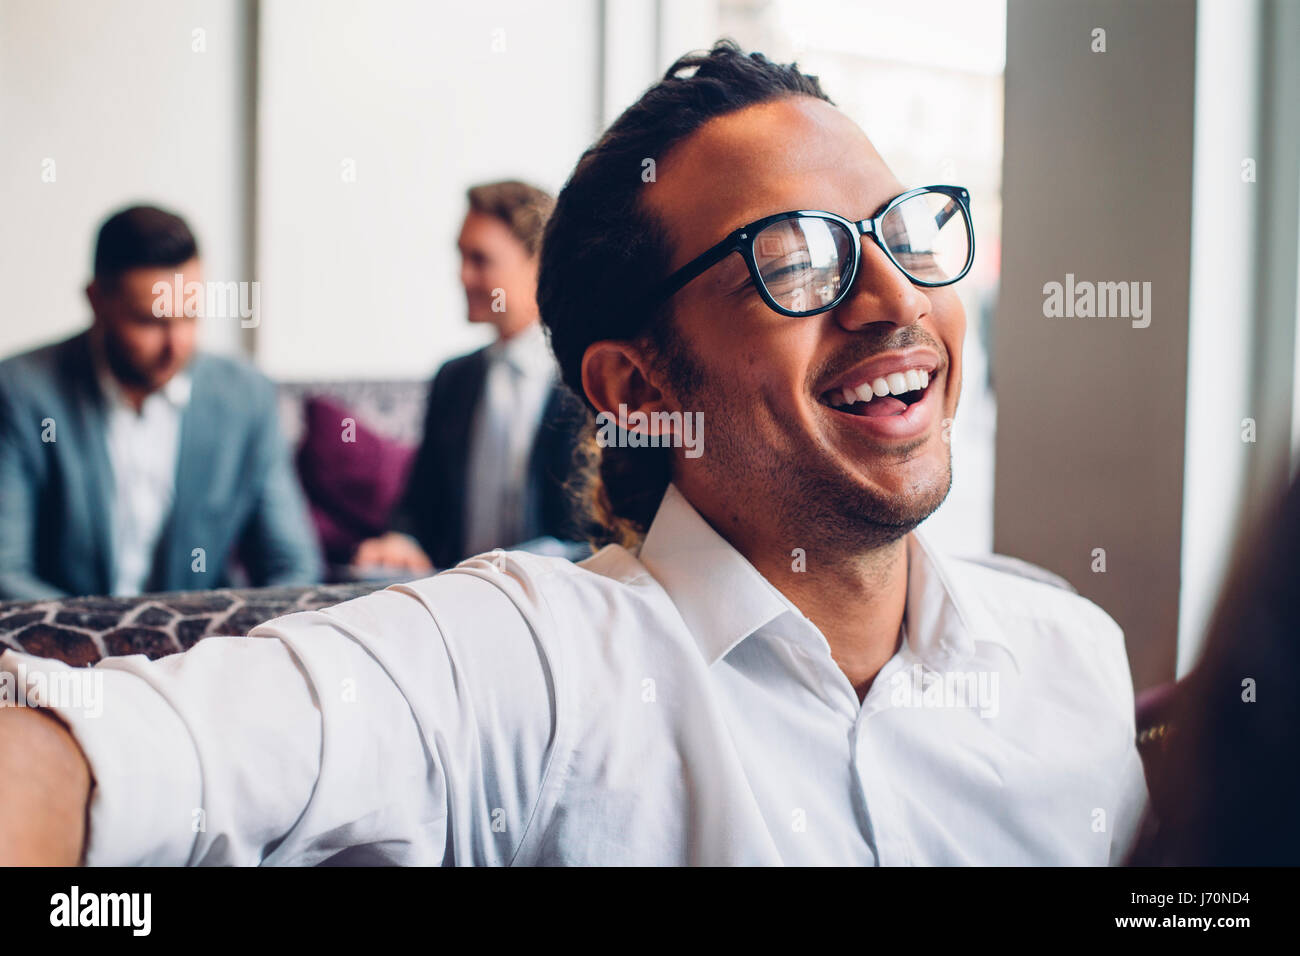 Aufnahme eines Geschäftsmannes in einem Gespräch mit jemanden lachen hautnah. Zwei Männer in Anzügen können reden im Hintergrund gesehen werden. Stockfoto